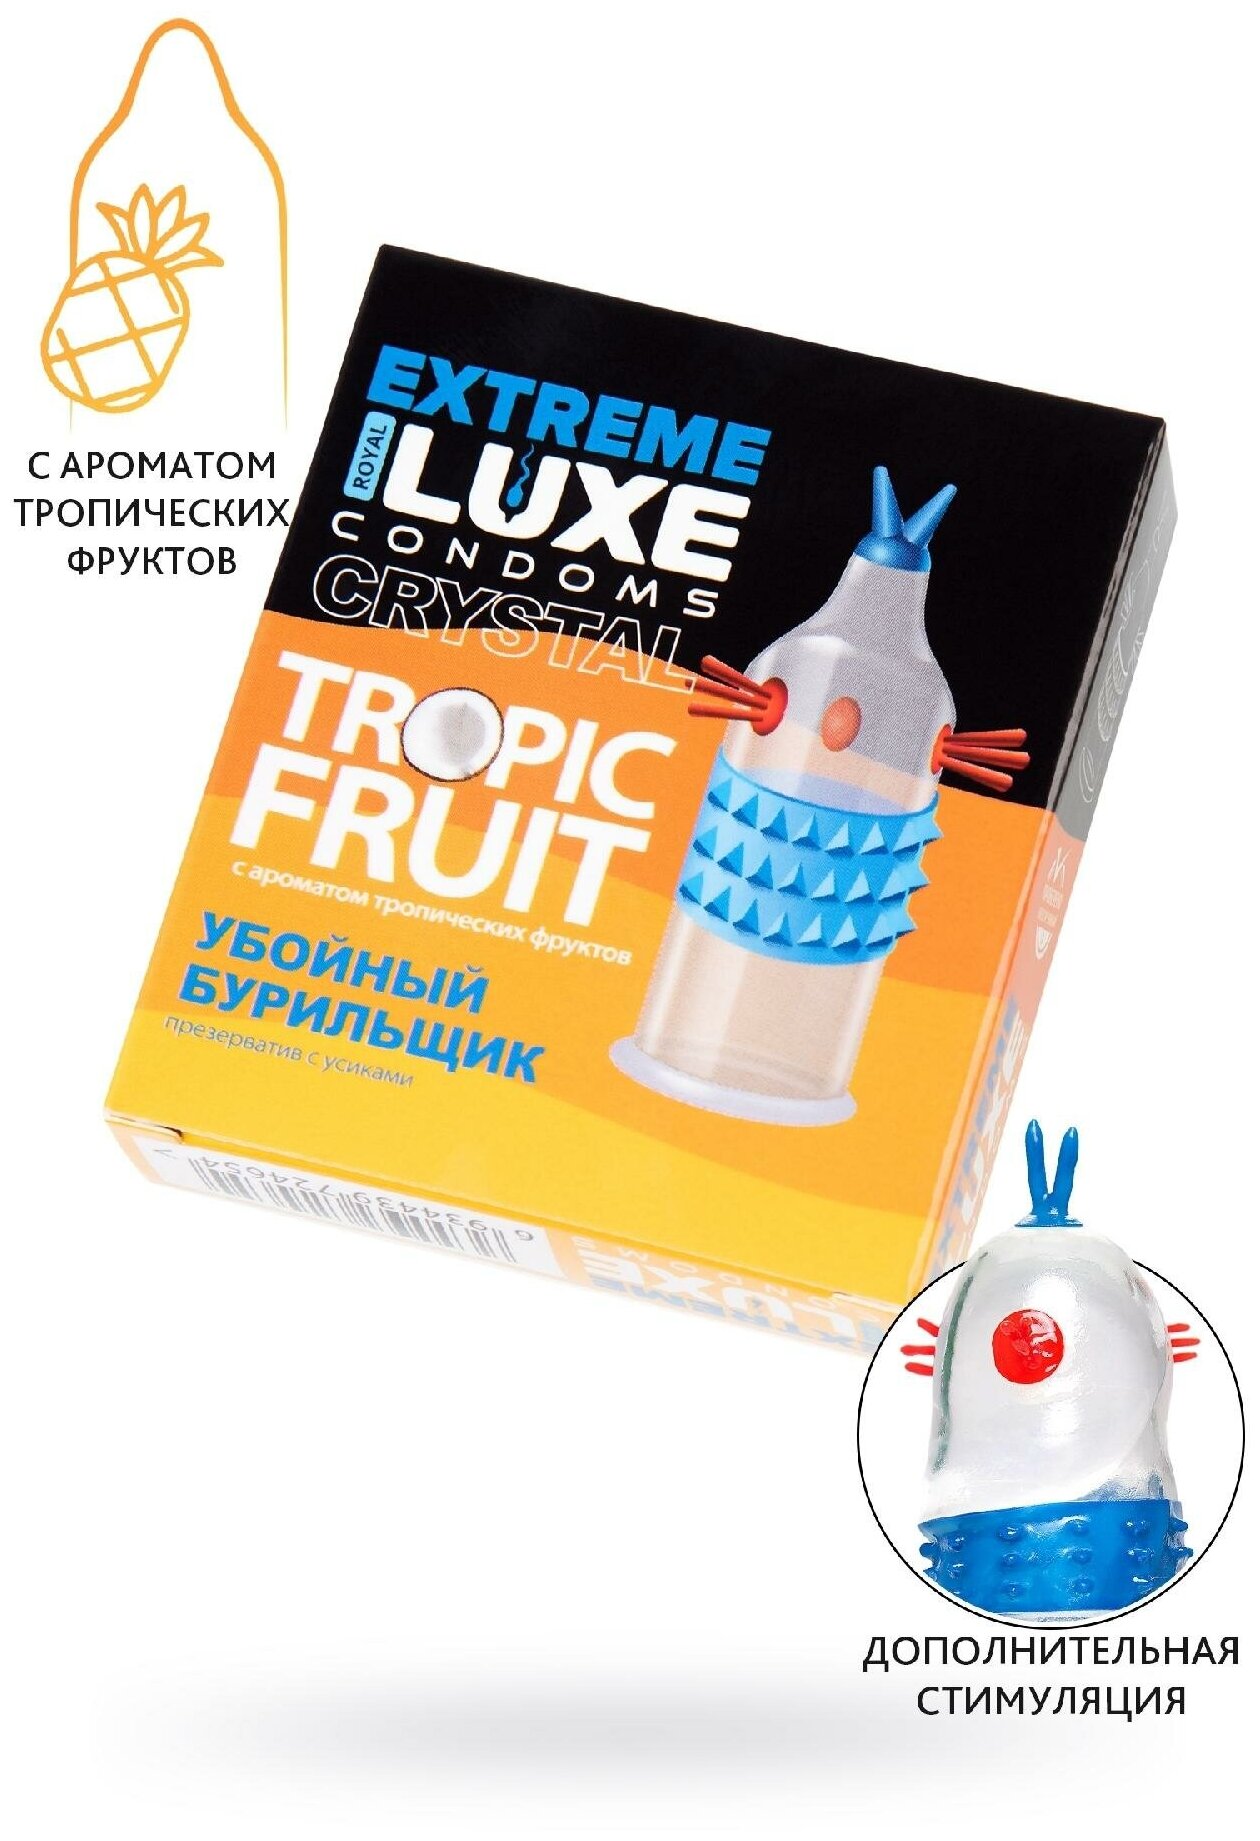 Luxe EXTREME Необычный презерватив "Убойный бурильщик" с усиками и ароматом тропических фруктов 1шт.